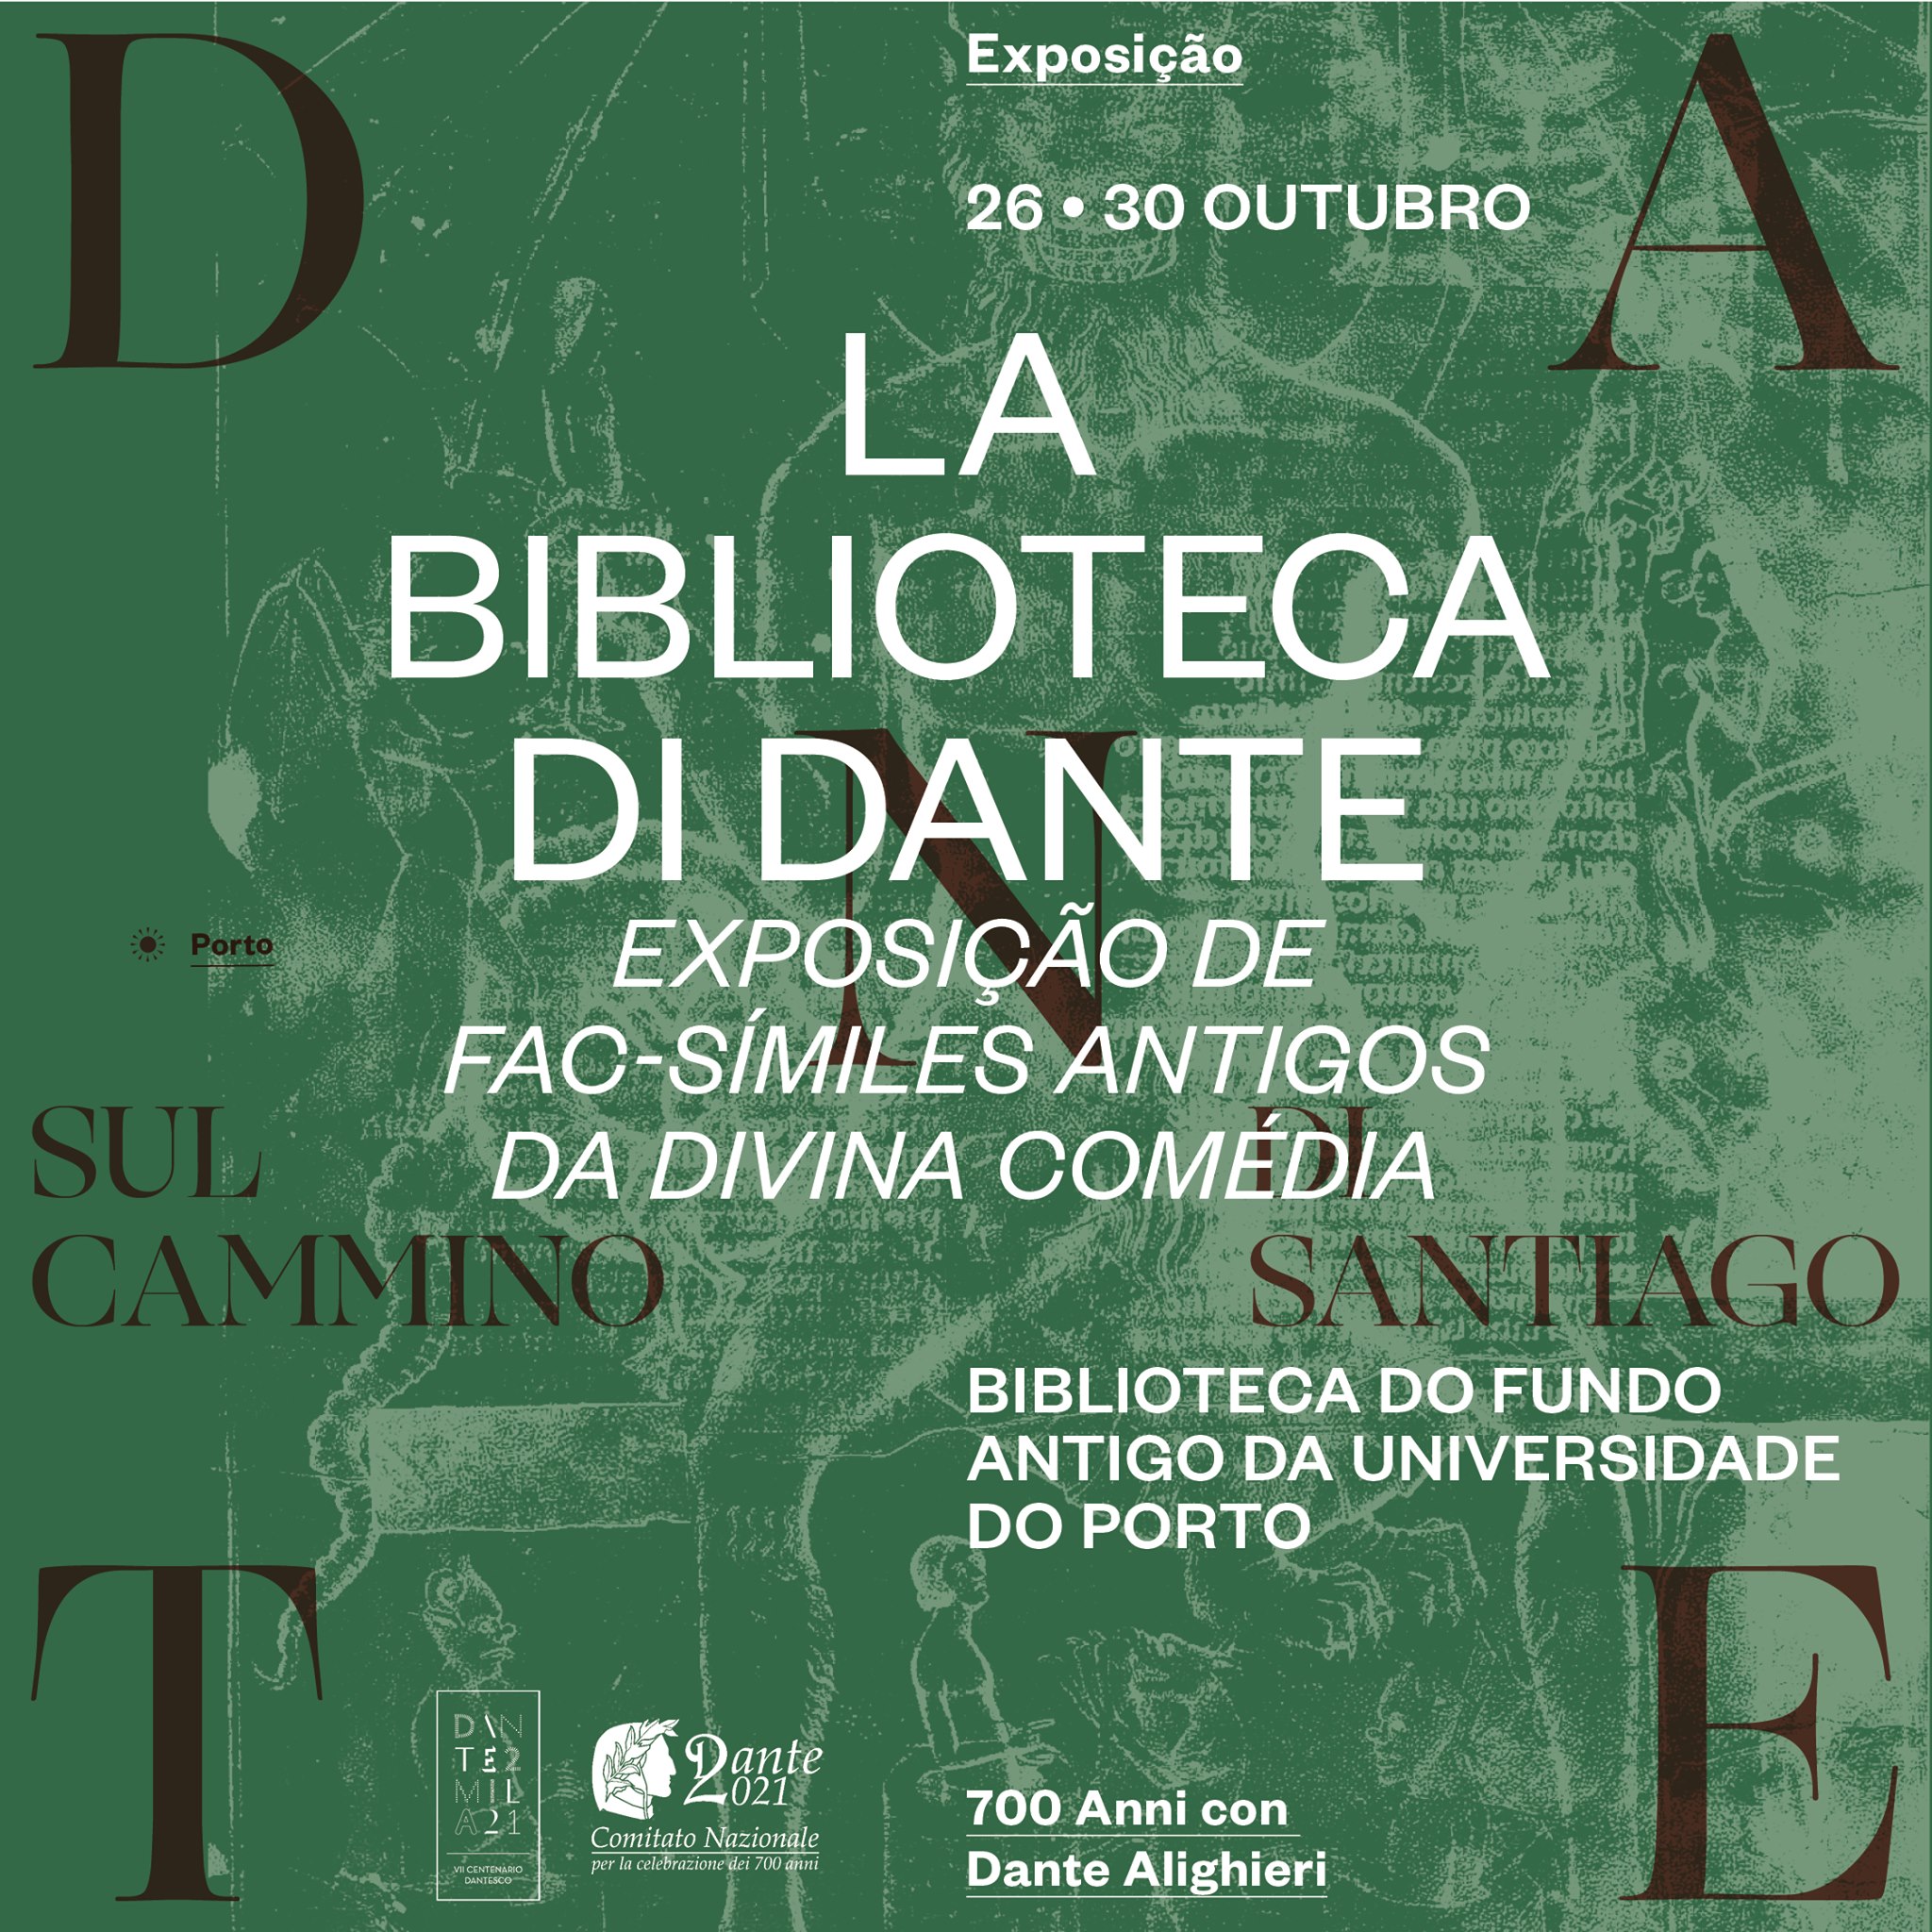 Inauguração e exposição - LA BIBLIOTECA DI DANTE